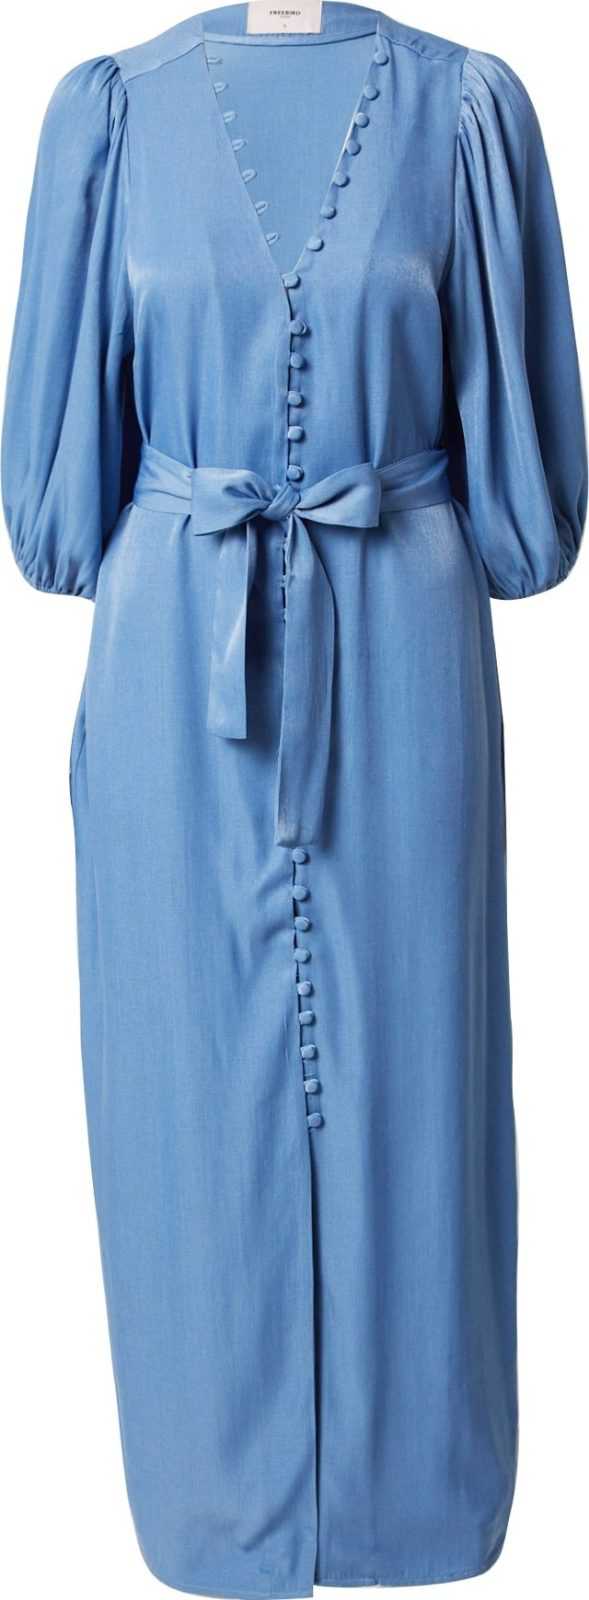 Freebird Košilové šaty 'Leora' nebeská modř